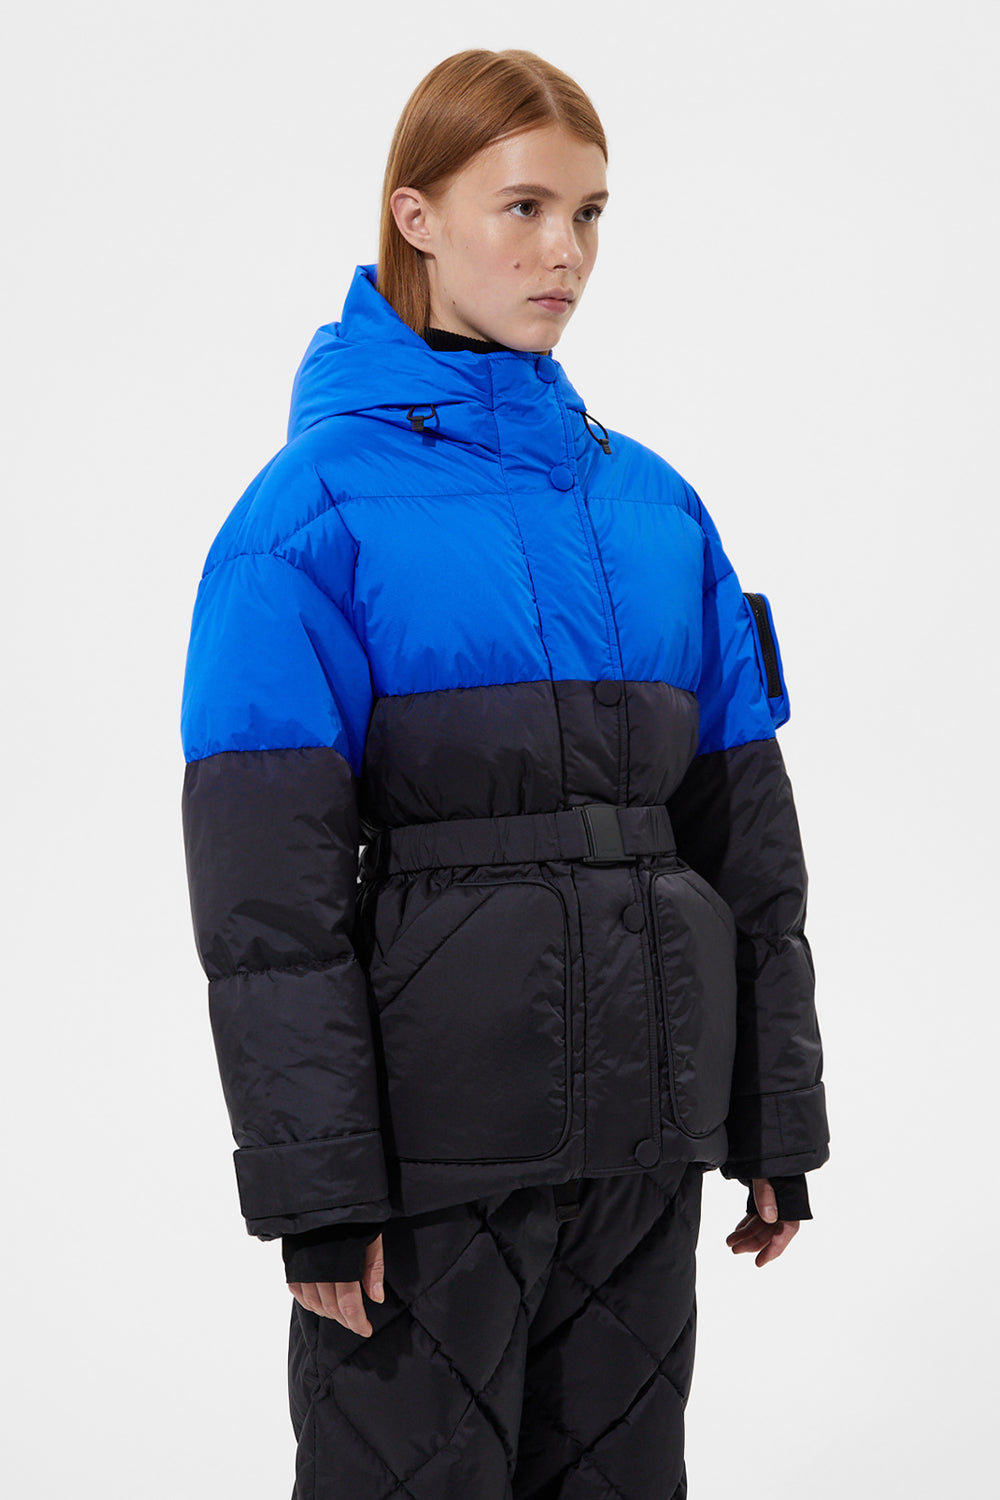 Apres Ski Michlin Jacket Tec Blue + Tec Black